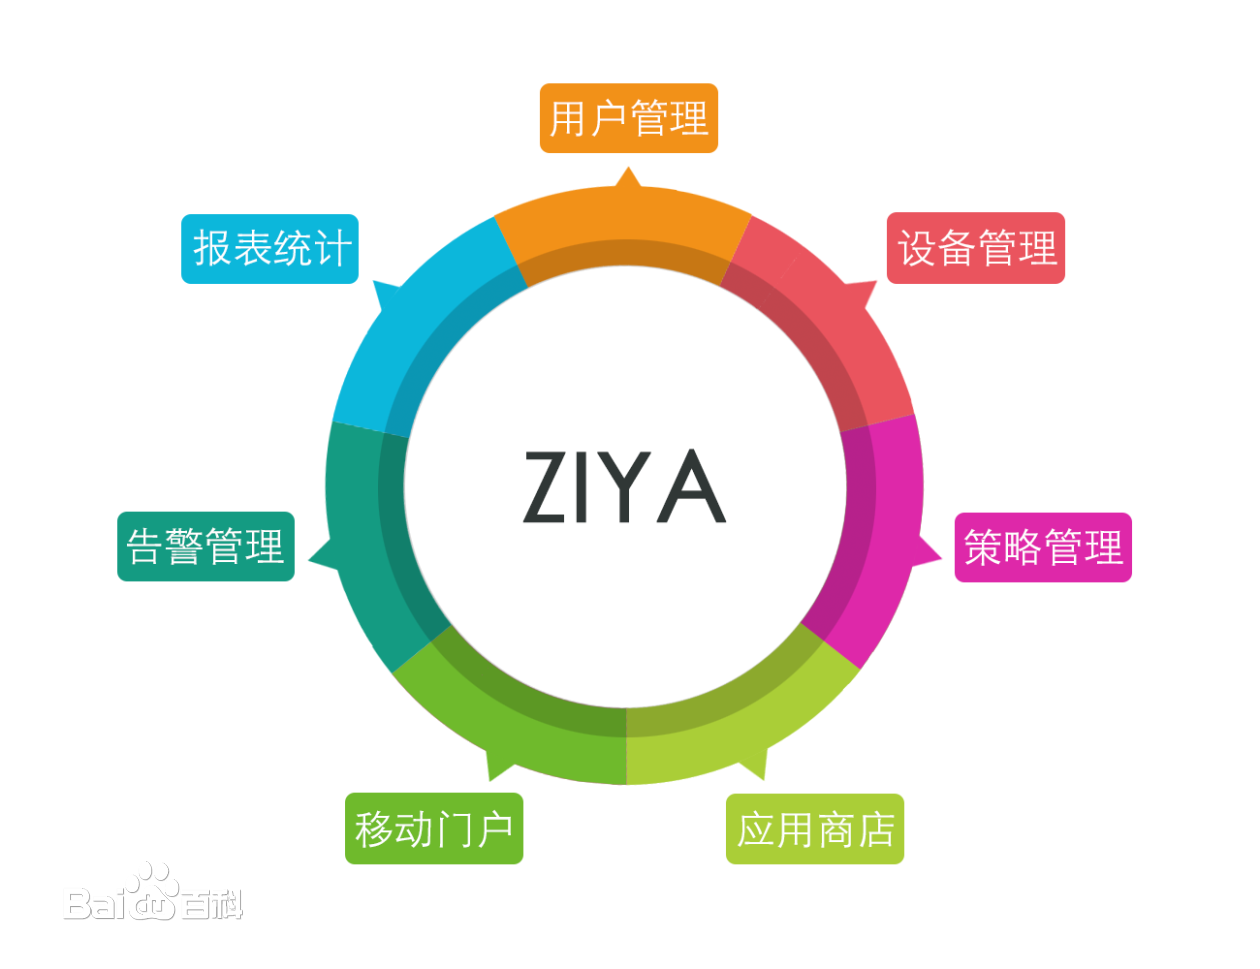 ZIYA企業移動管理平台組成部分